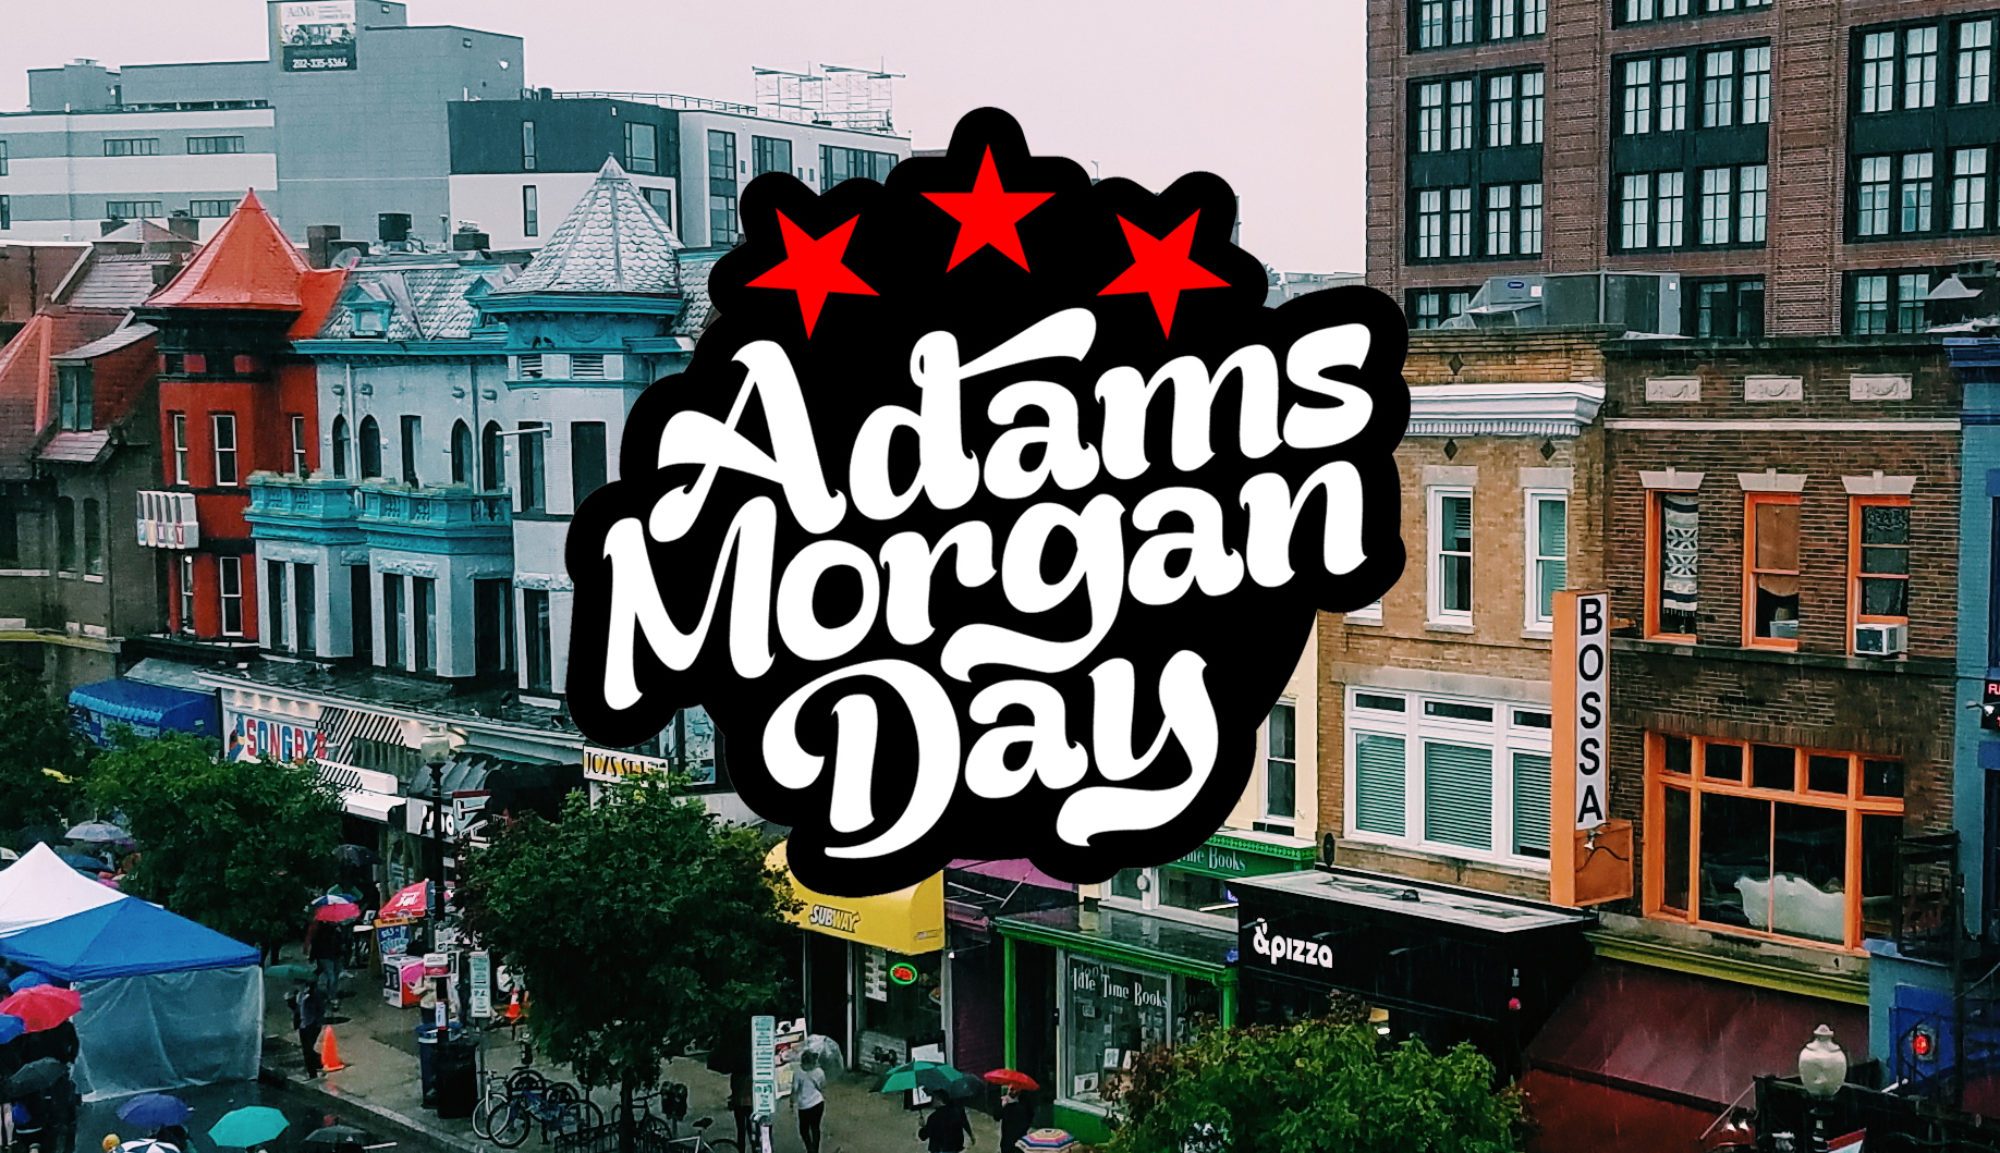 Adams Morgan Day 9.12